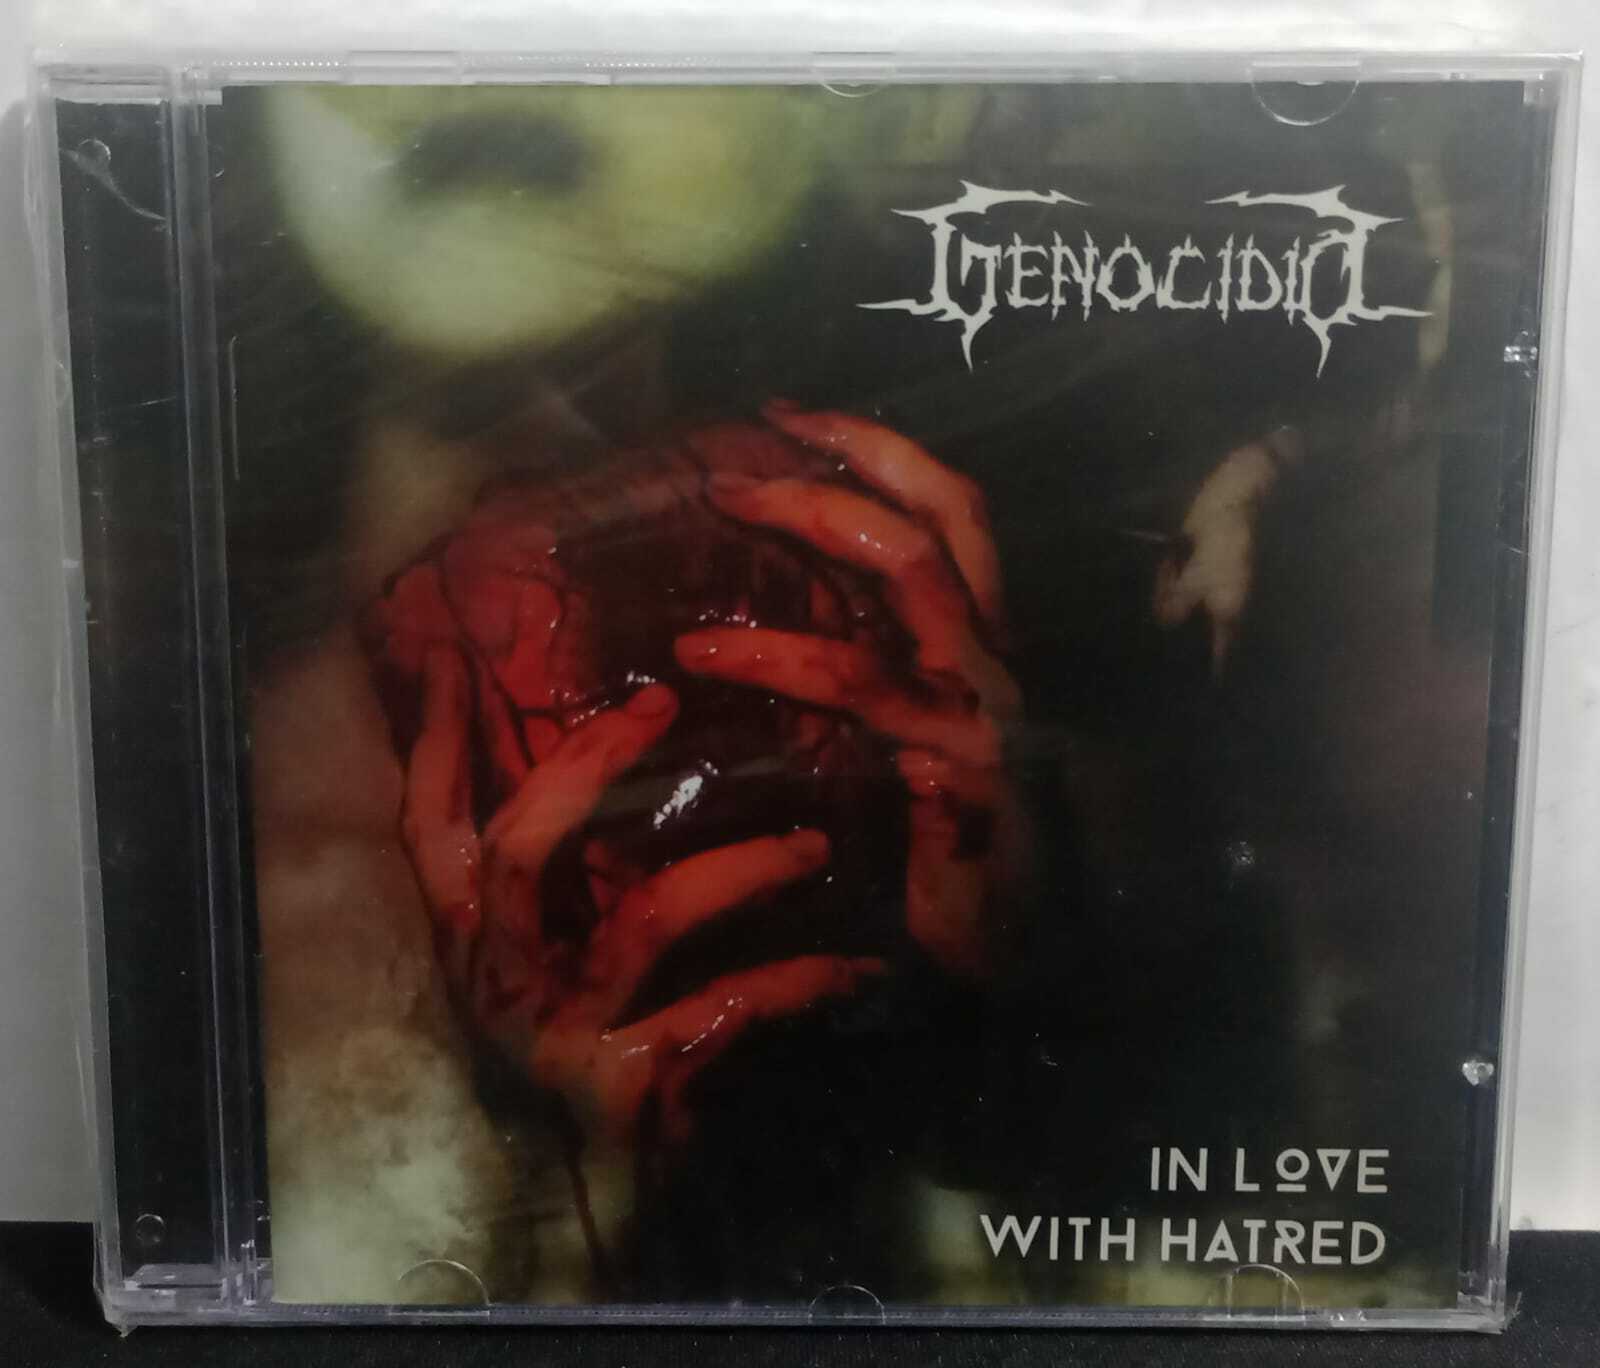 CD - Genocidio - in Love with Hatred (Lacrado)